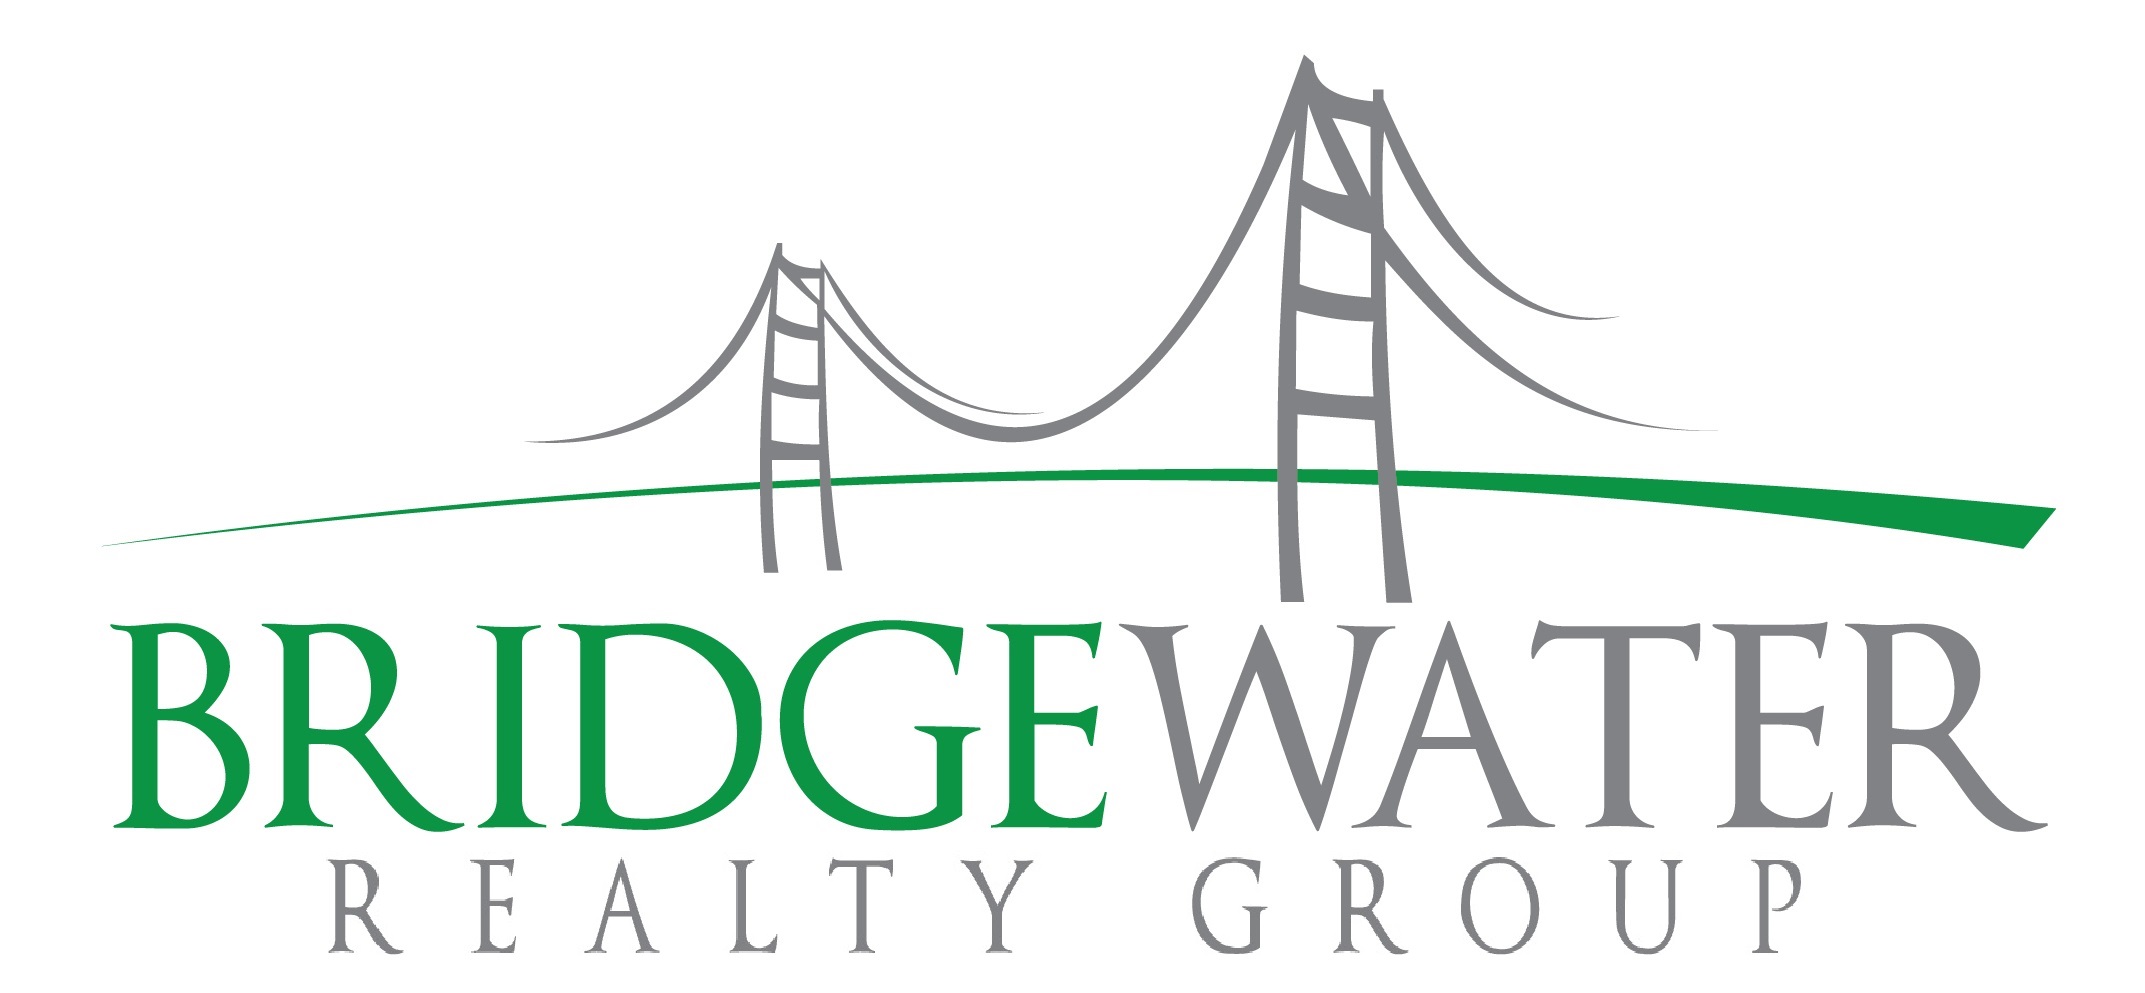 Bridgewater Realty Group